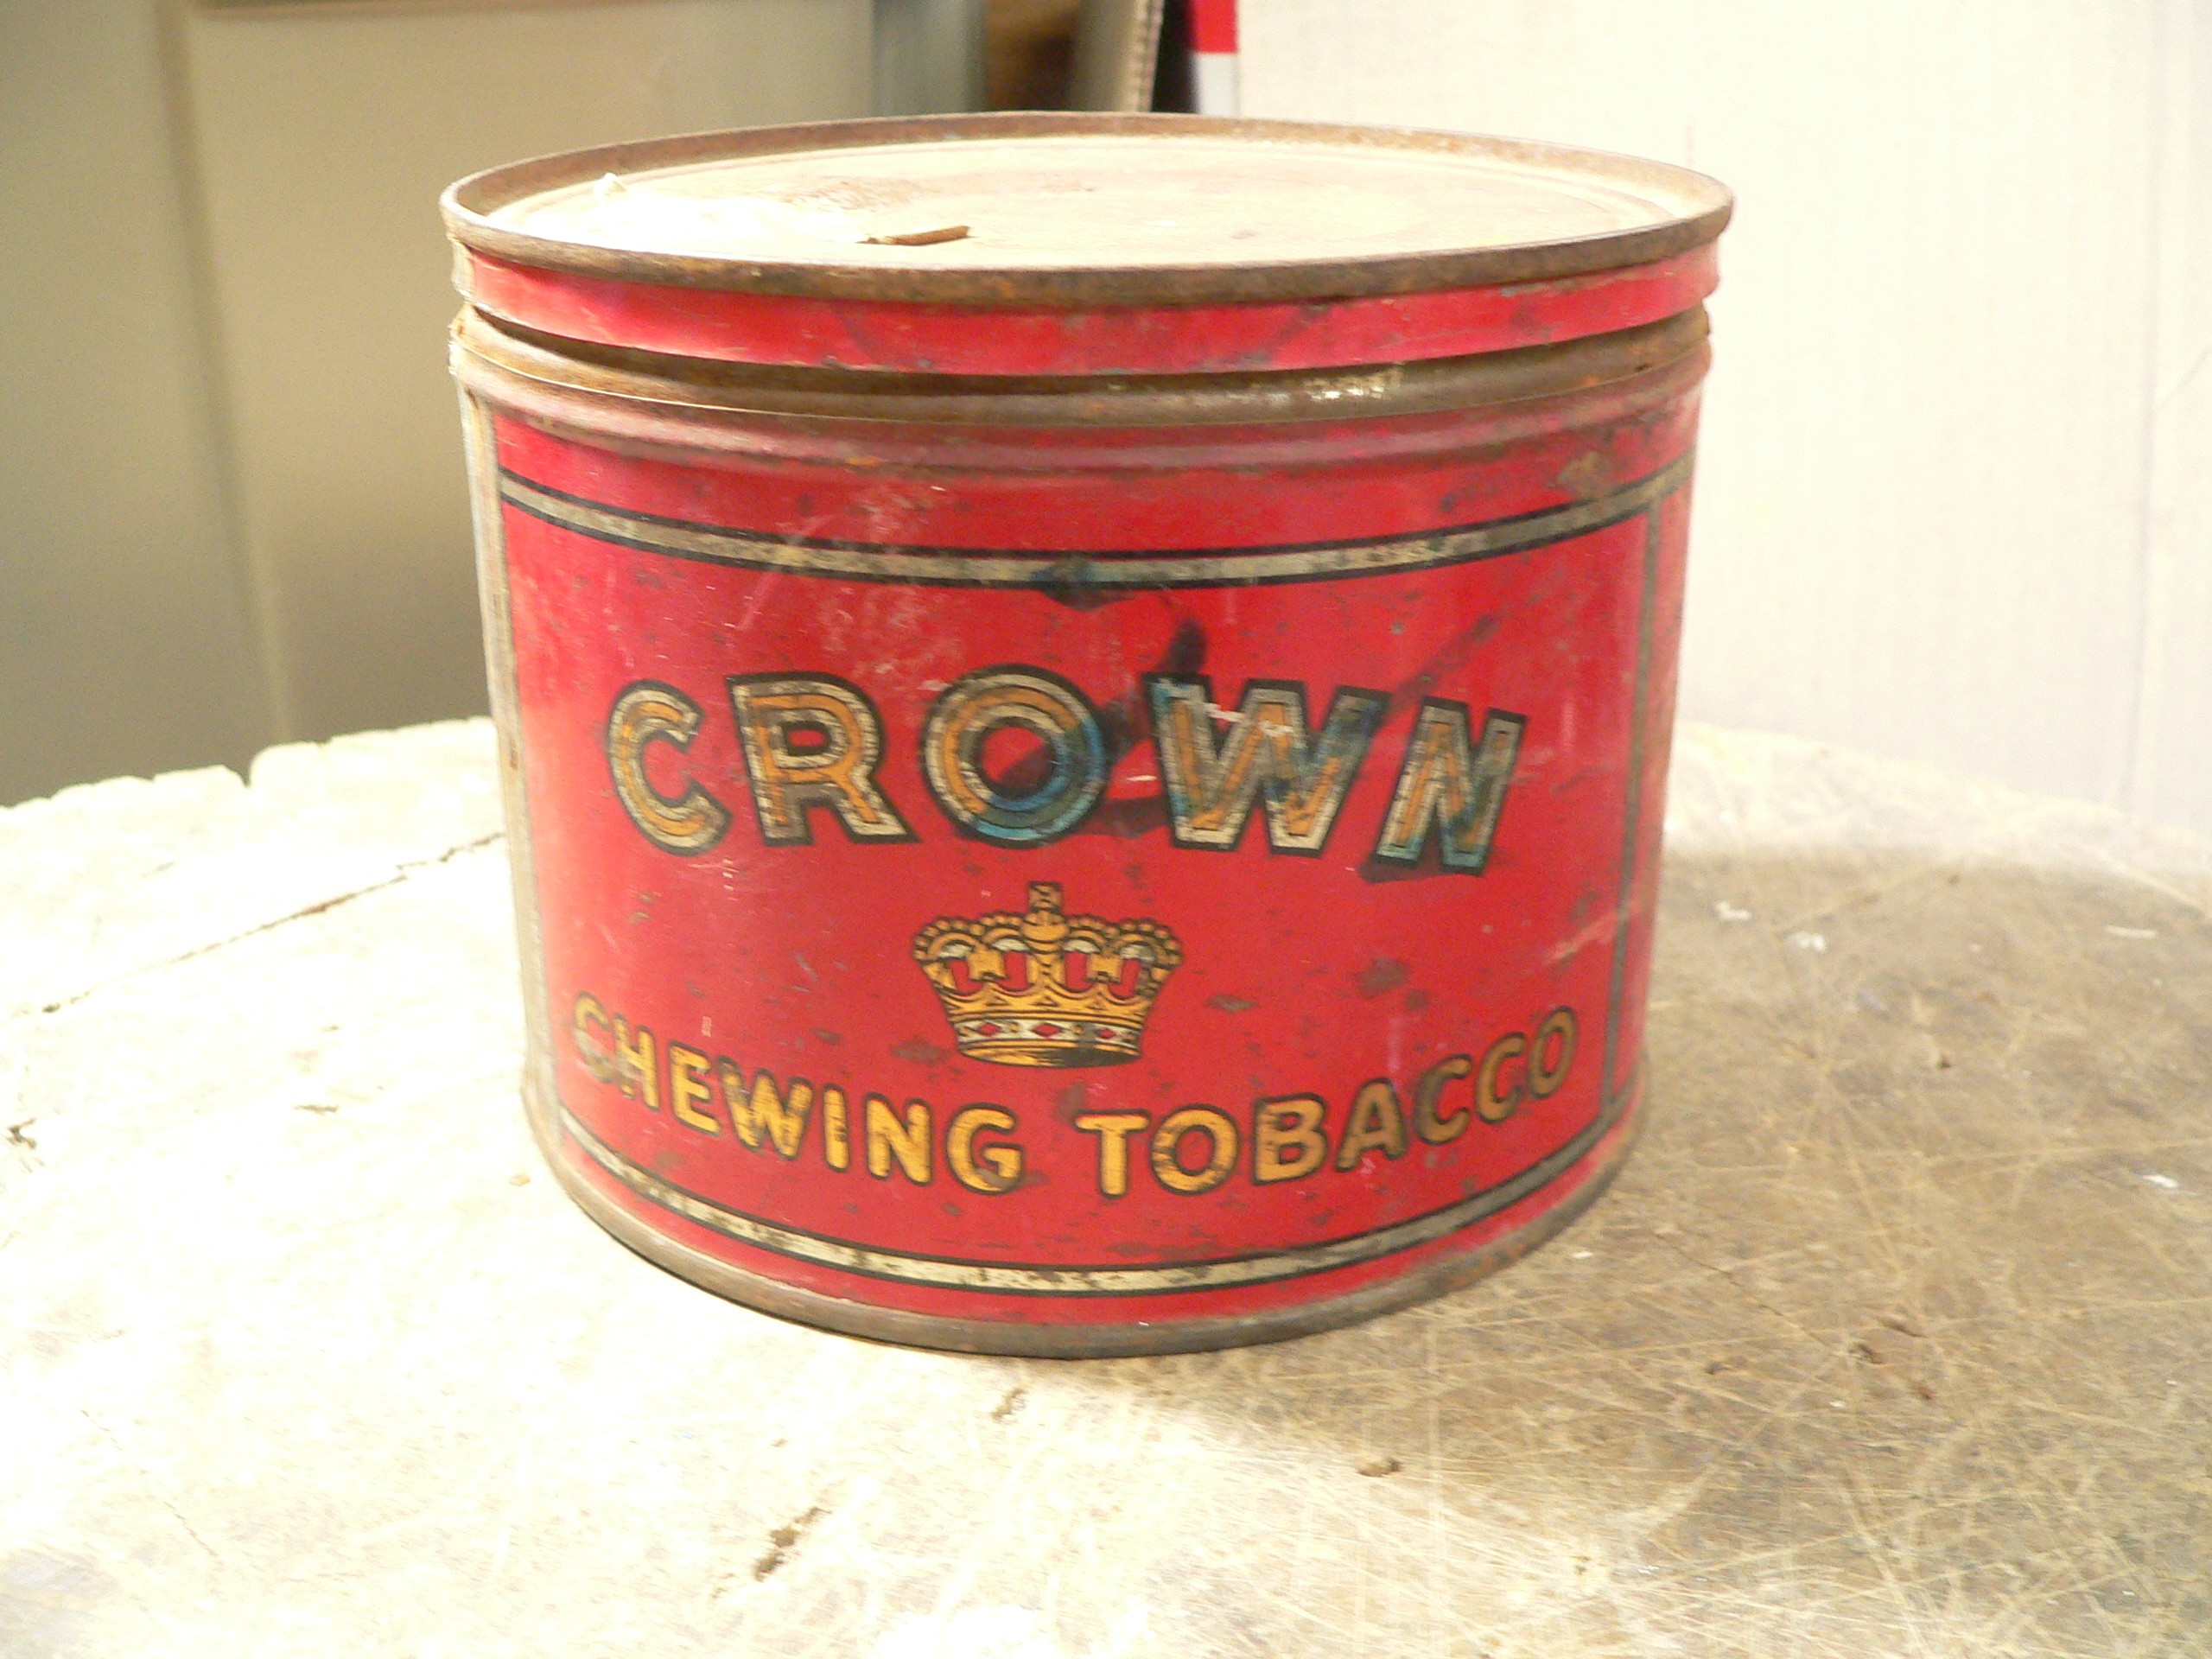 Canne de tabac Crown # 8352